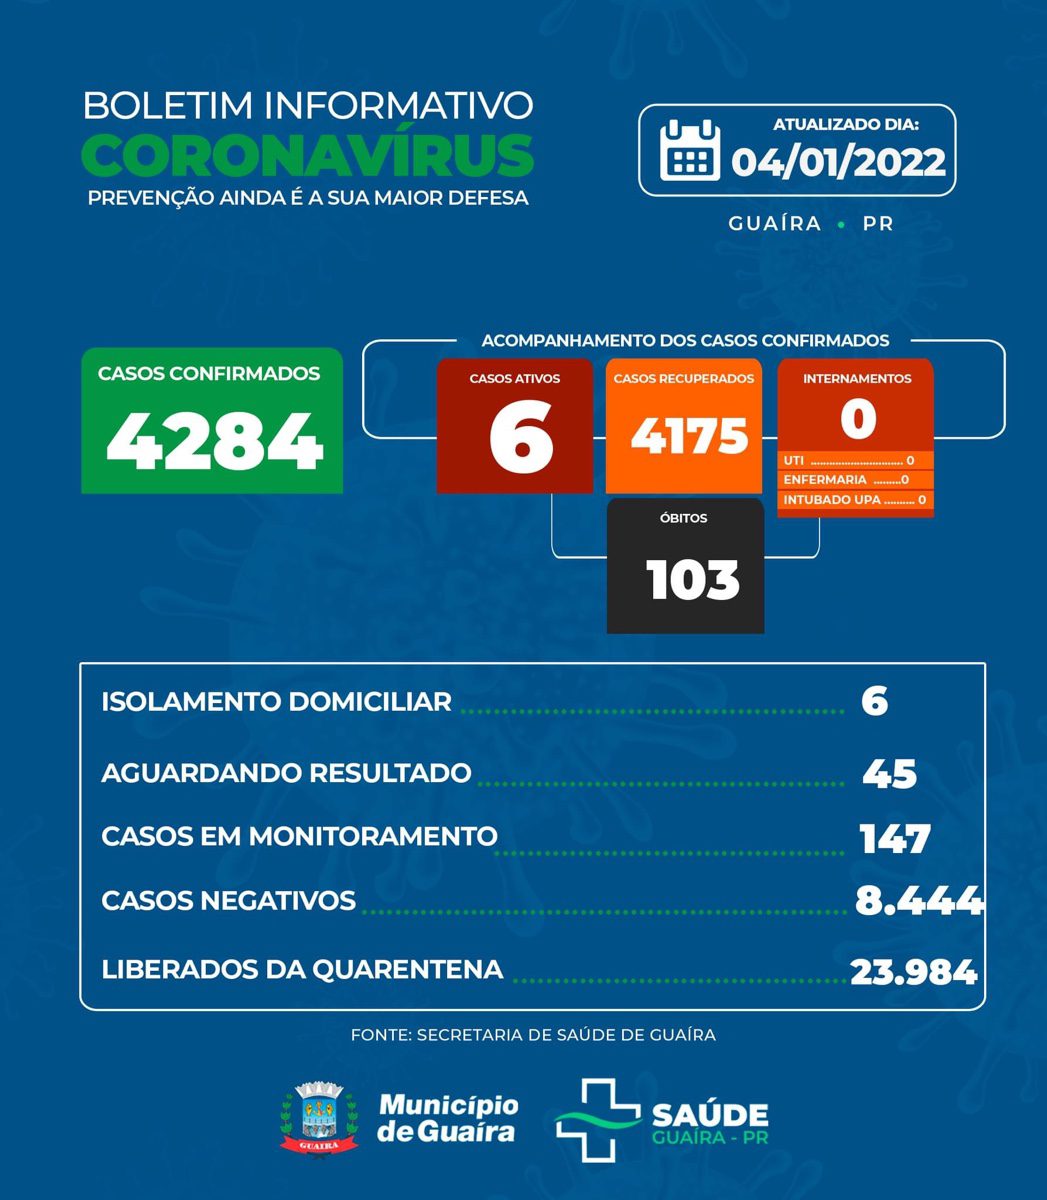 Guaíra - Saúde informa 6 casos ativos e 4175 recuperados da Covid-19 • Portal Guaíra